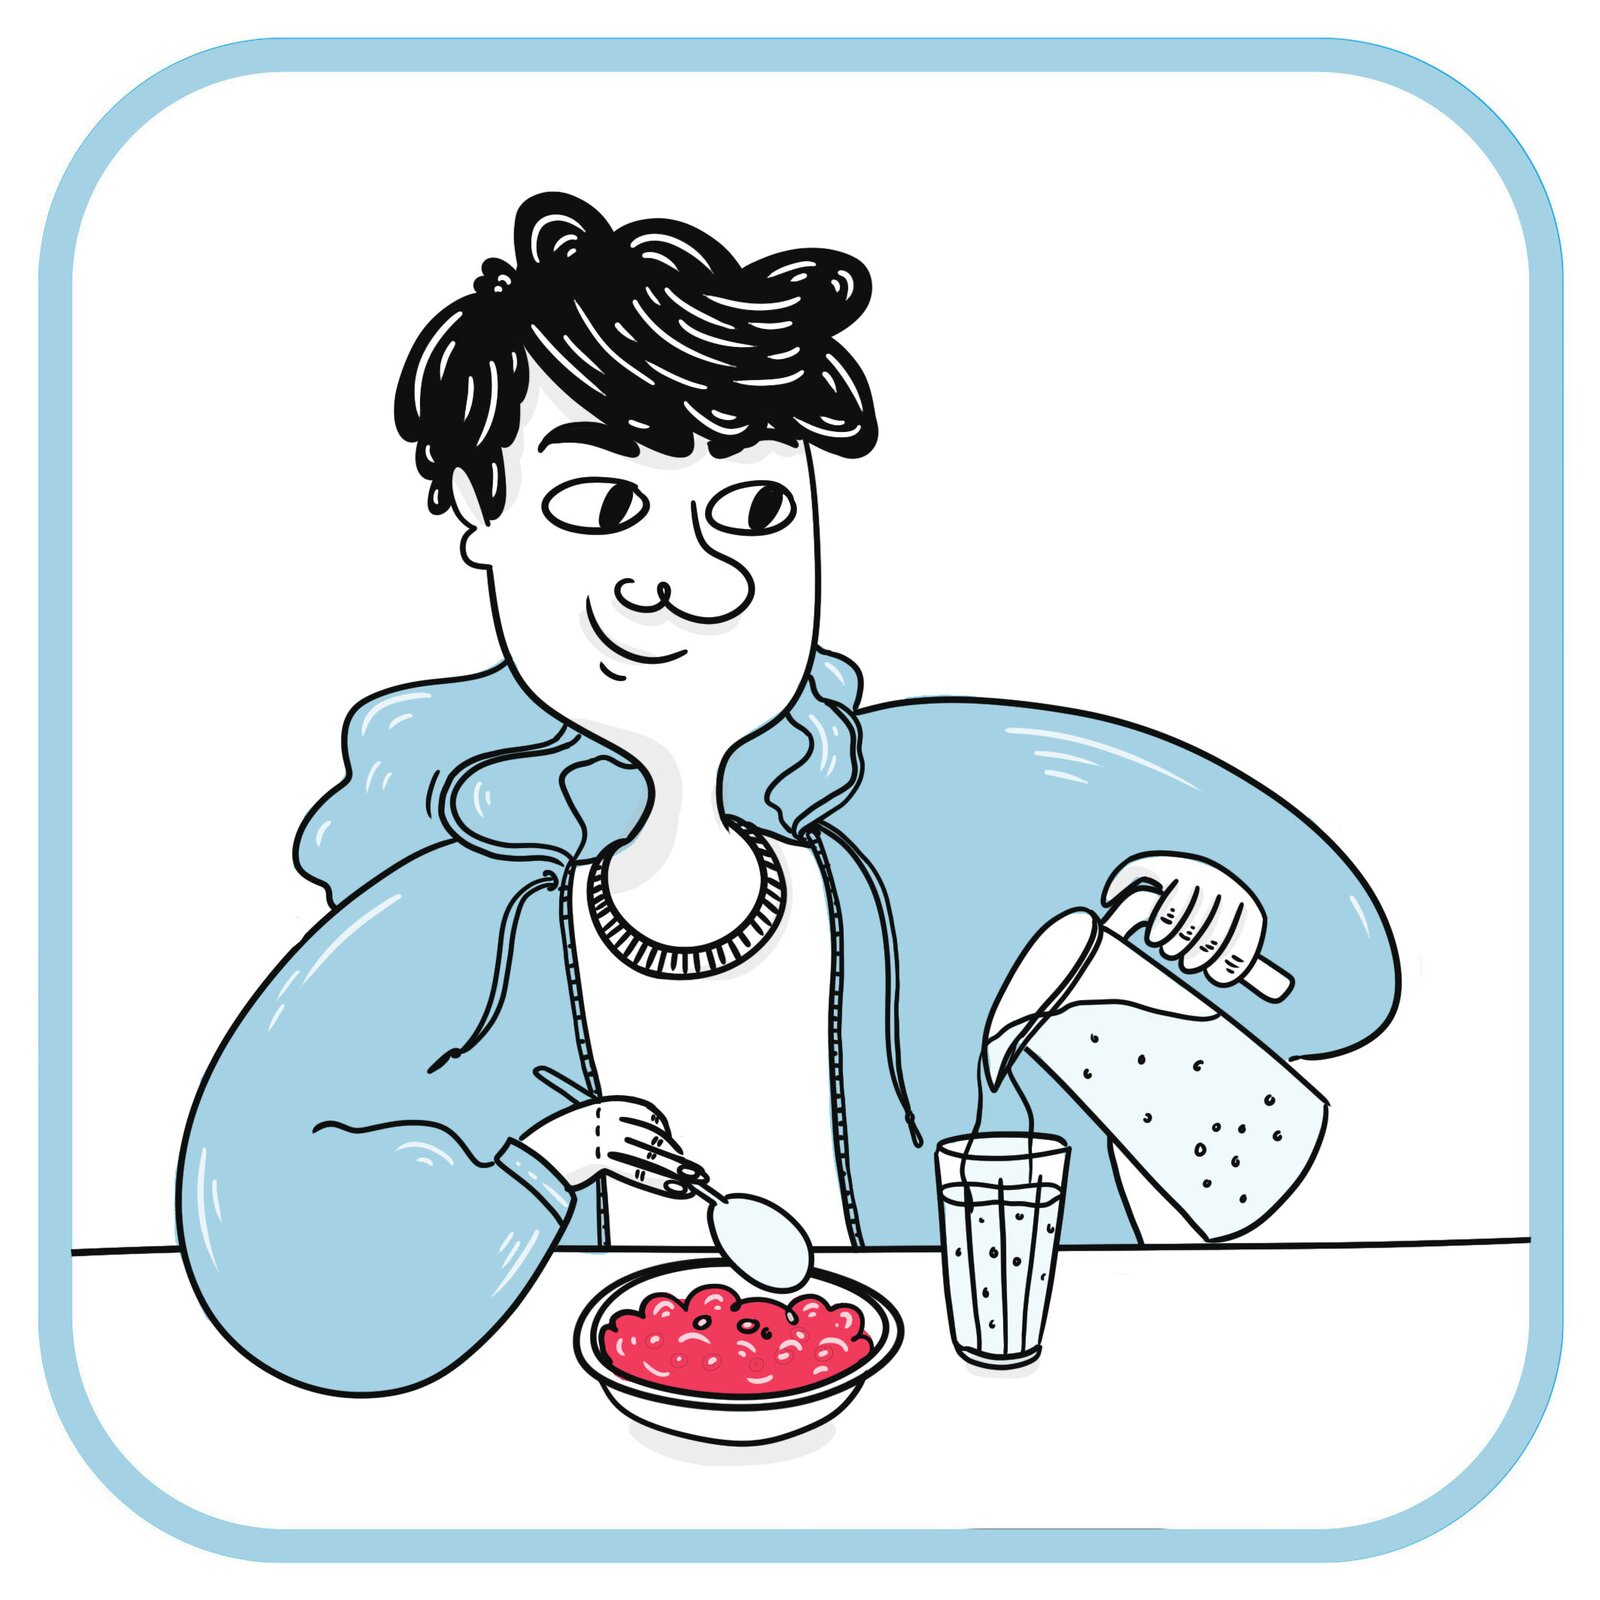 Uśmiechnięty chłopiec w niebieskiej bluzie siedzi przy stole.  Przed nim stoi talerz z jedzeniem. Chłopiec wlewa wodę z dzbanka do szklanki.